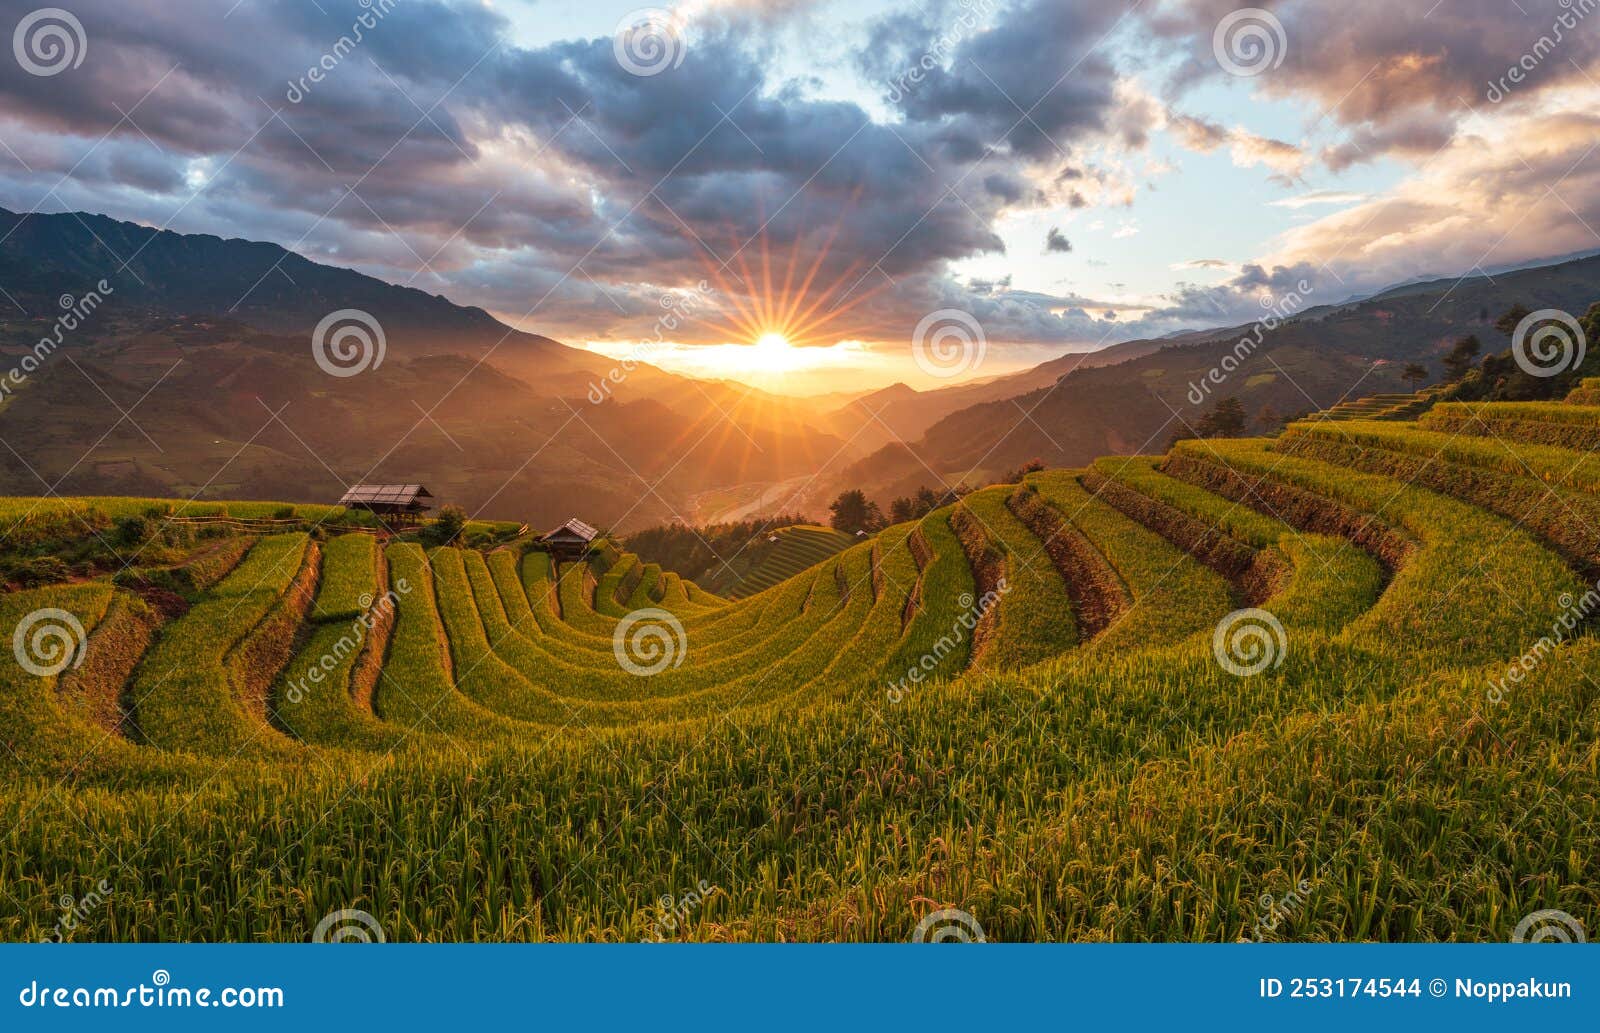 sunset over terraced rice fields, mu cang chai, yen bai, vietnam